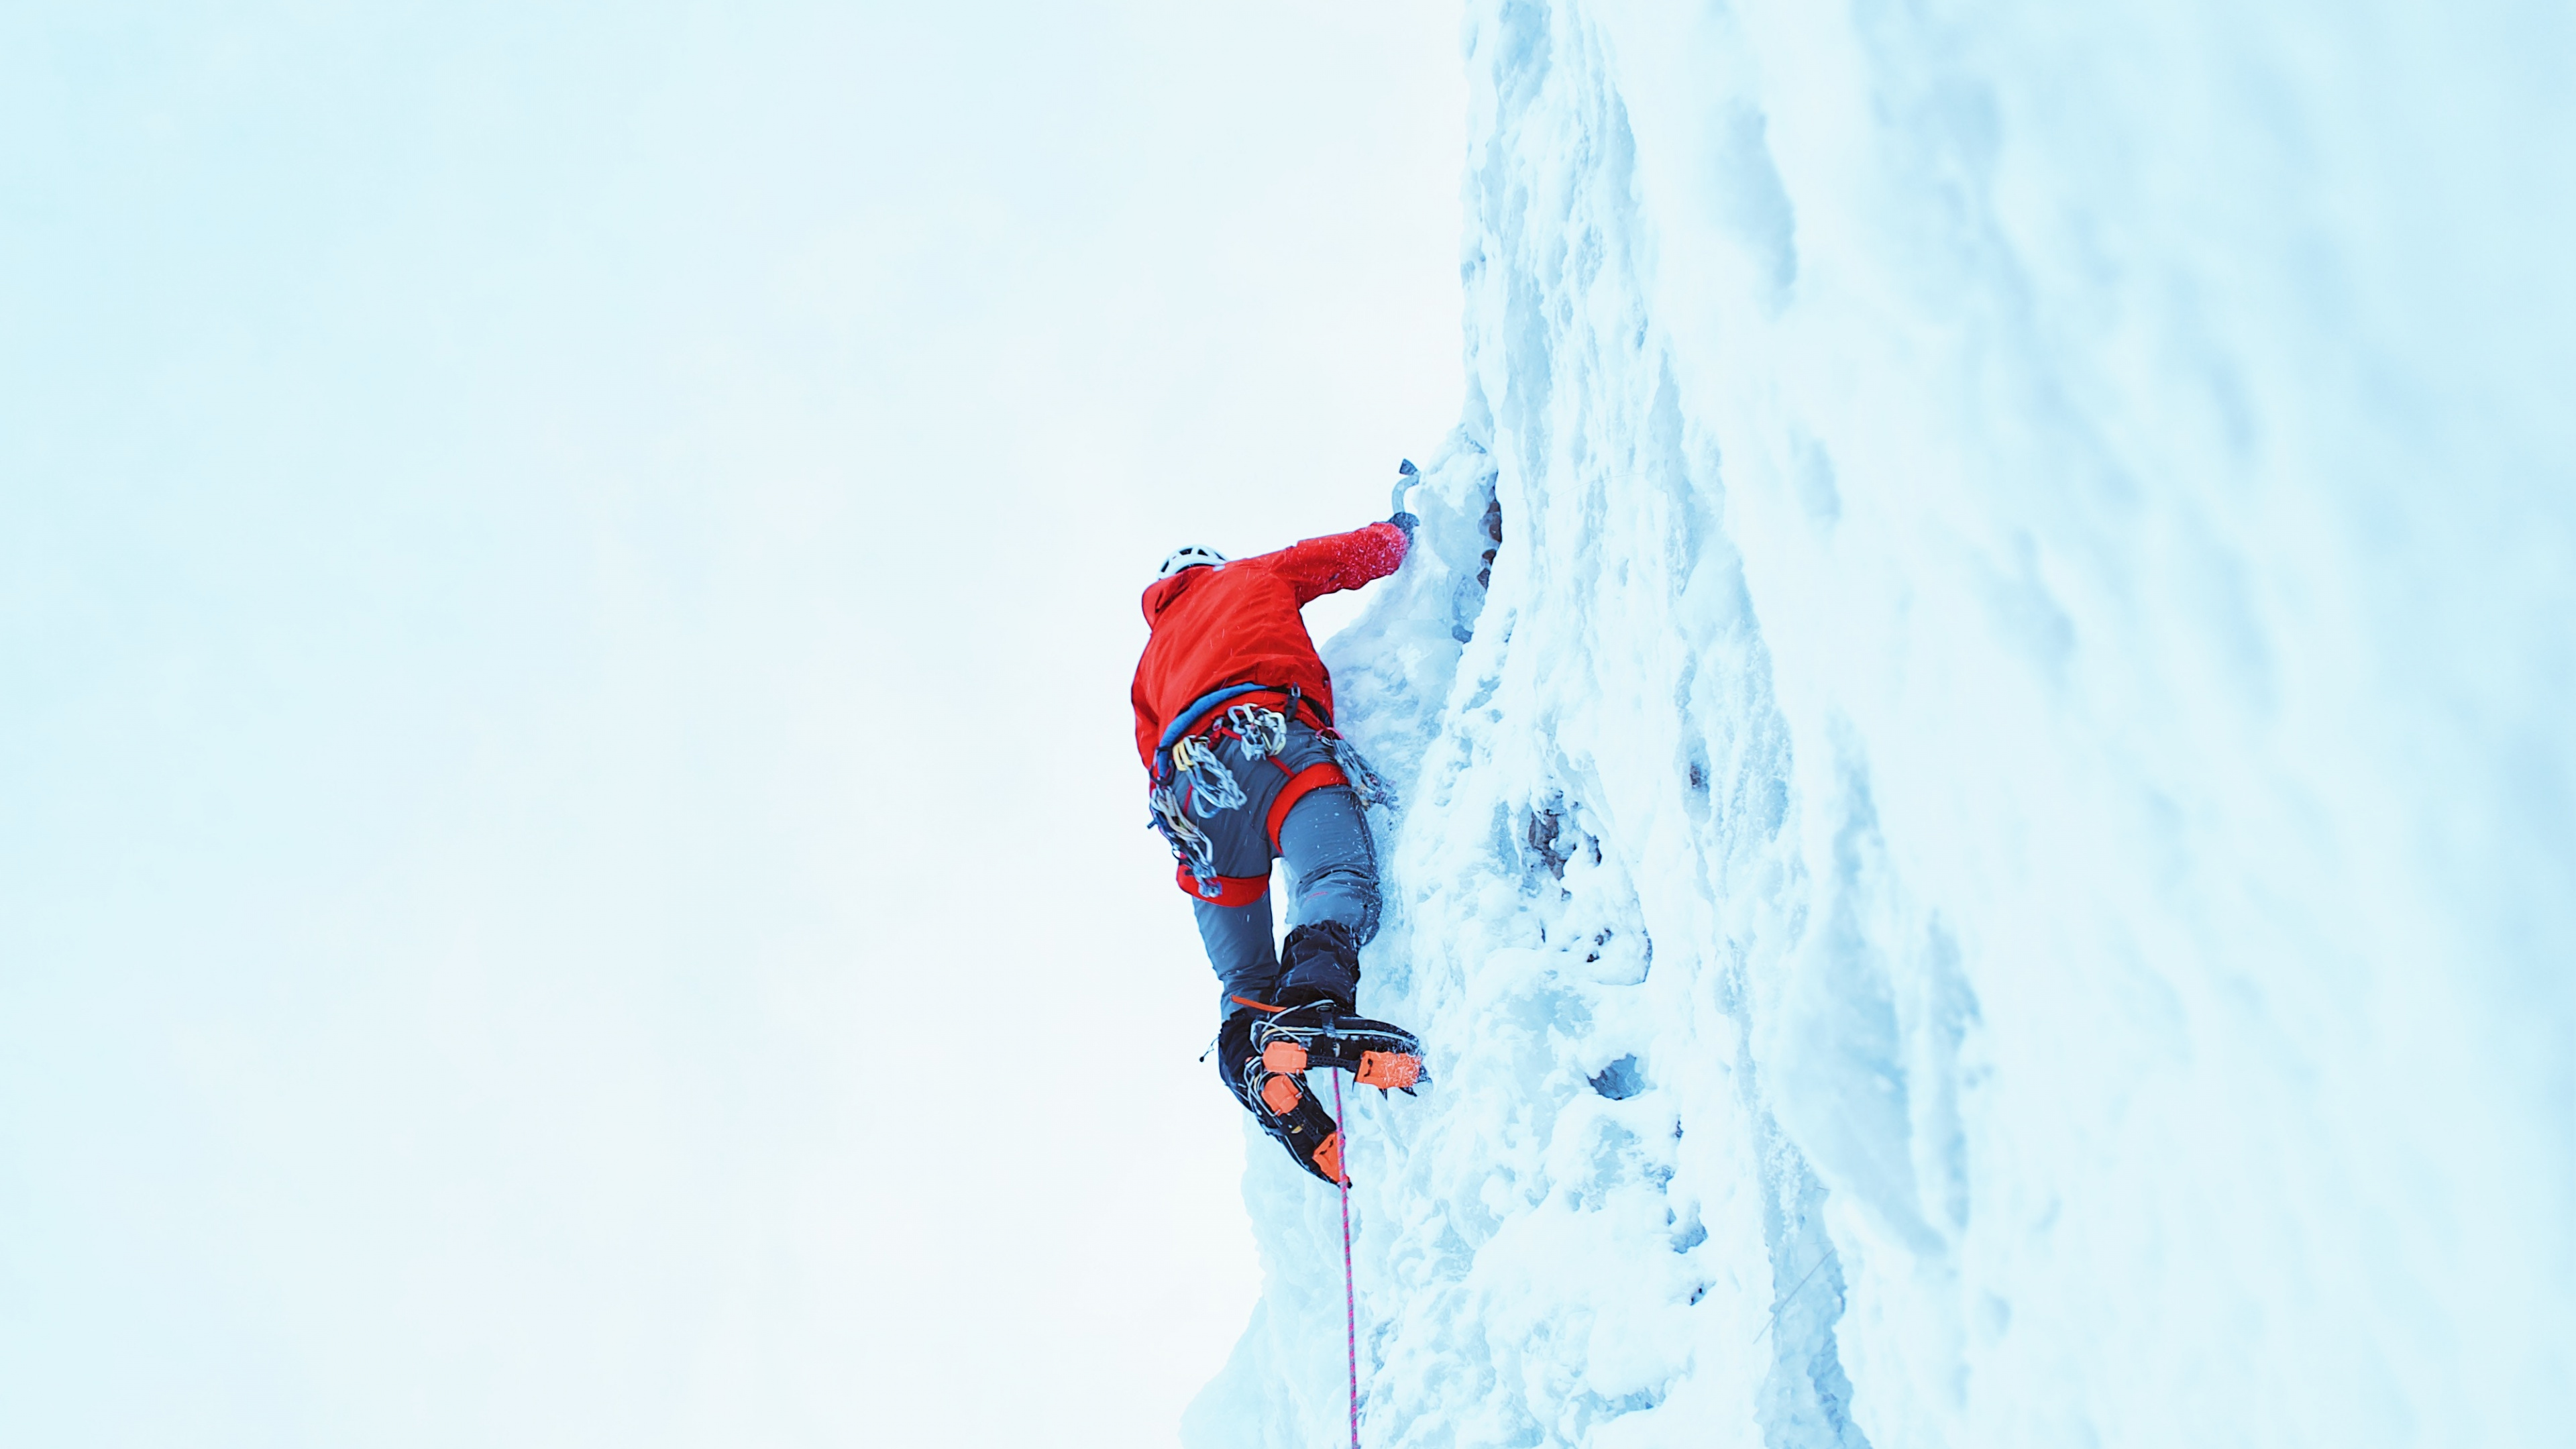 攀登, 极限运动, 登山, 冒险, 娱乐 壁纸 3840x2160 允许